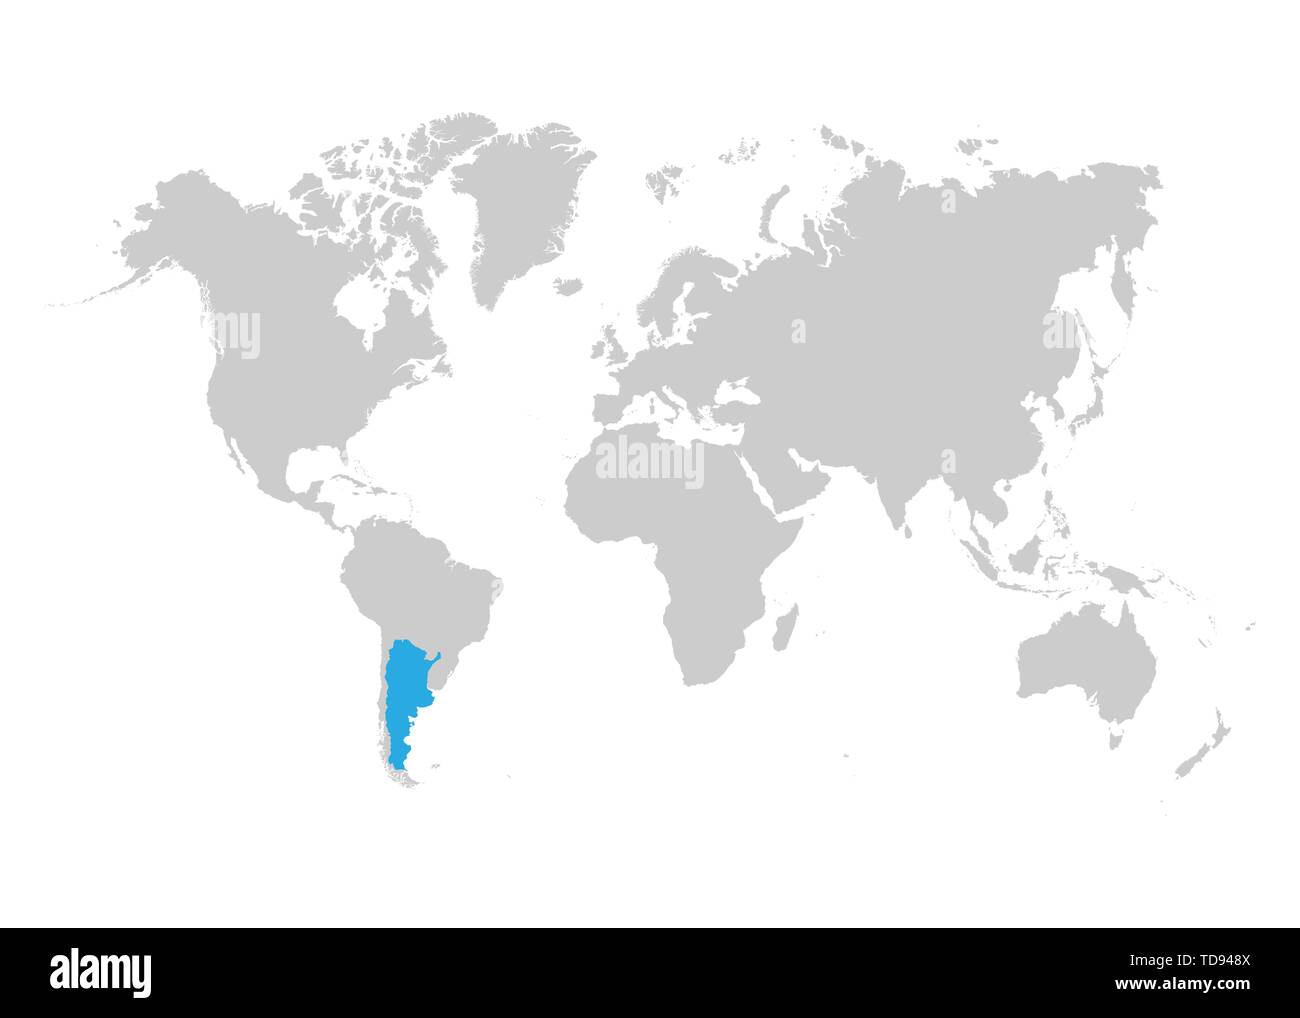 La mappa di Argentina è evidenziata in blu sulla mappa del mondo Illustrazione Vettoriale